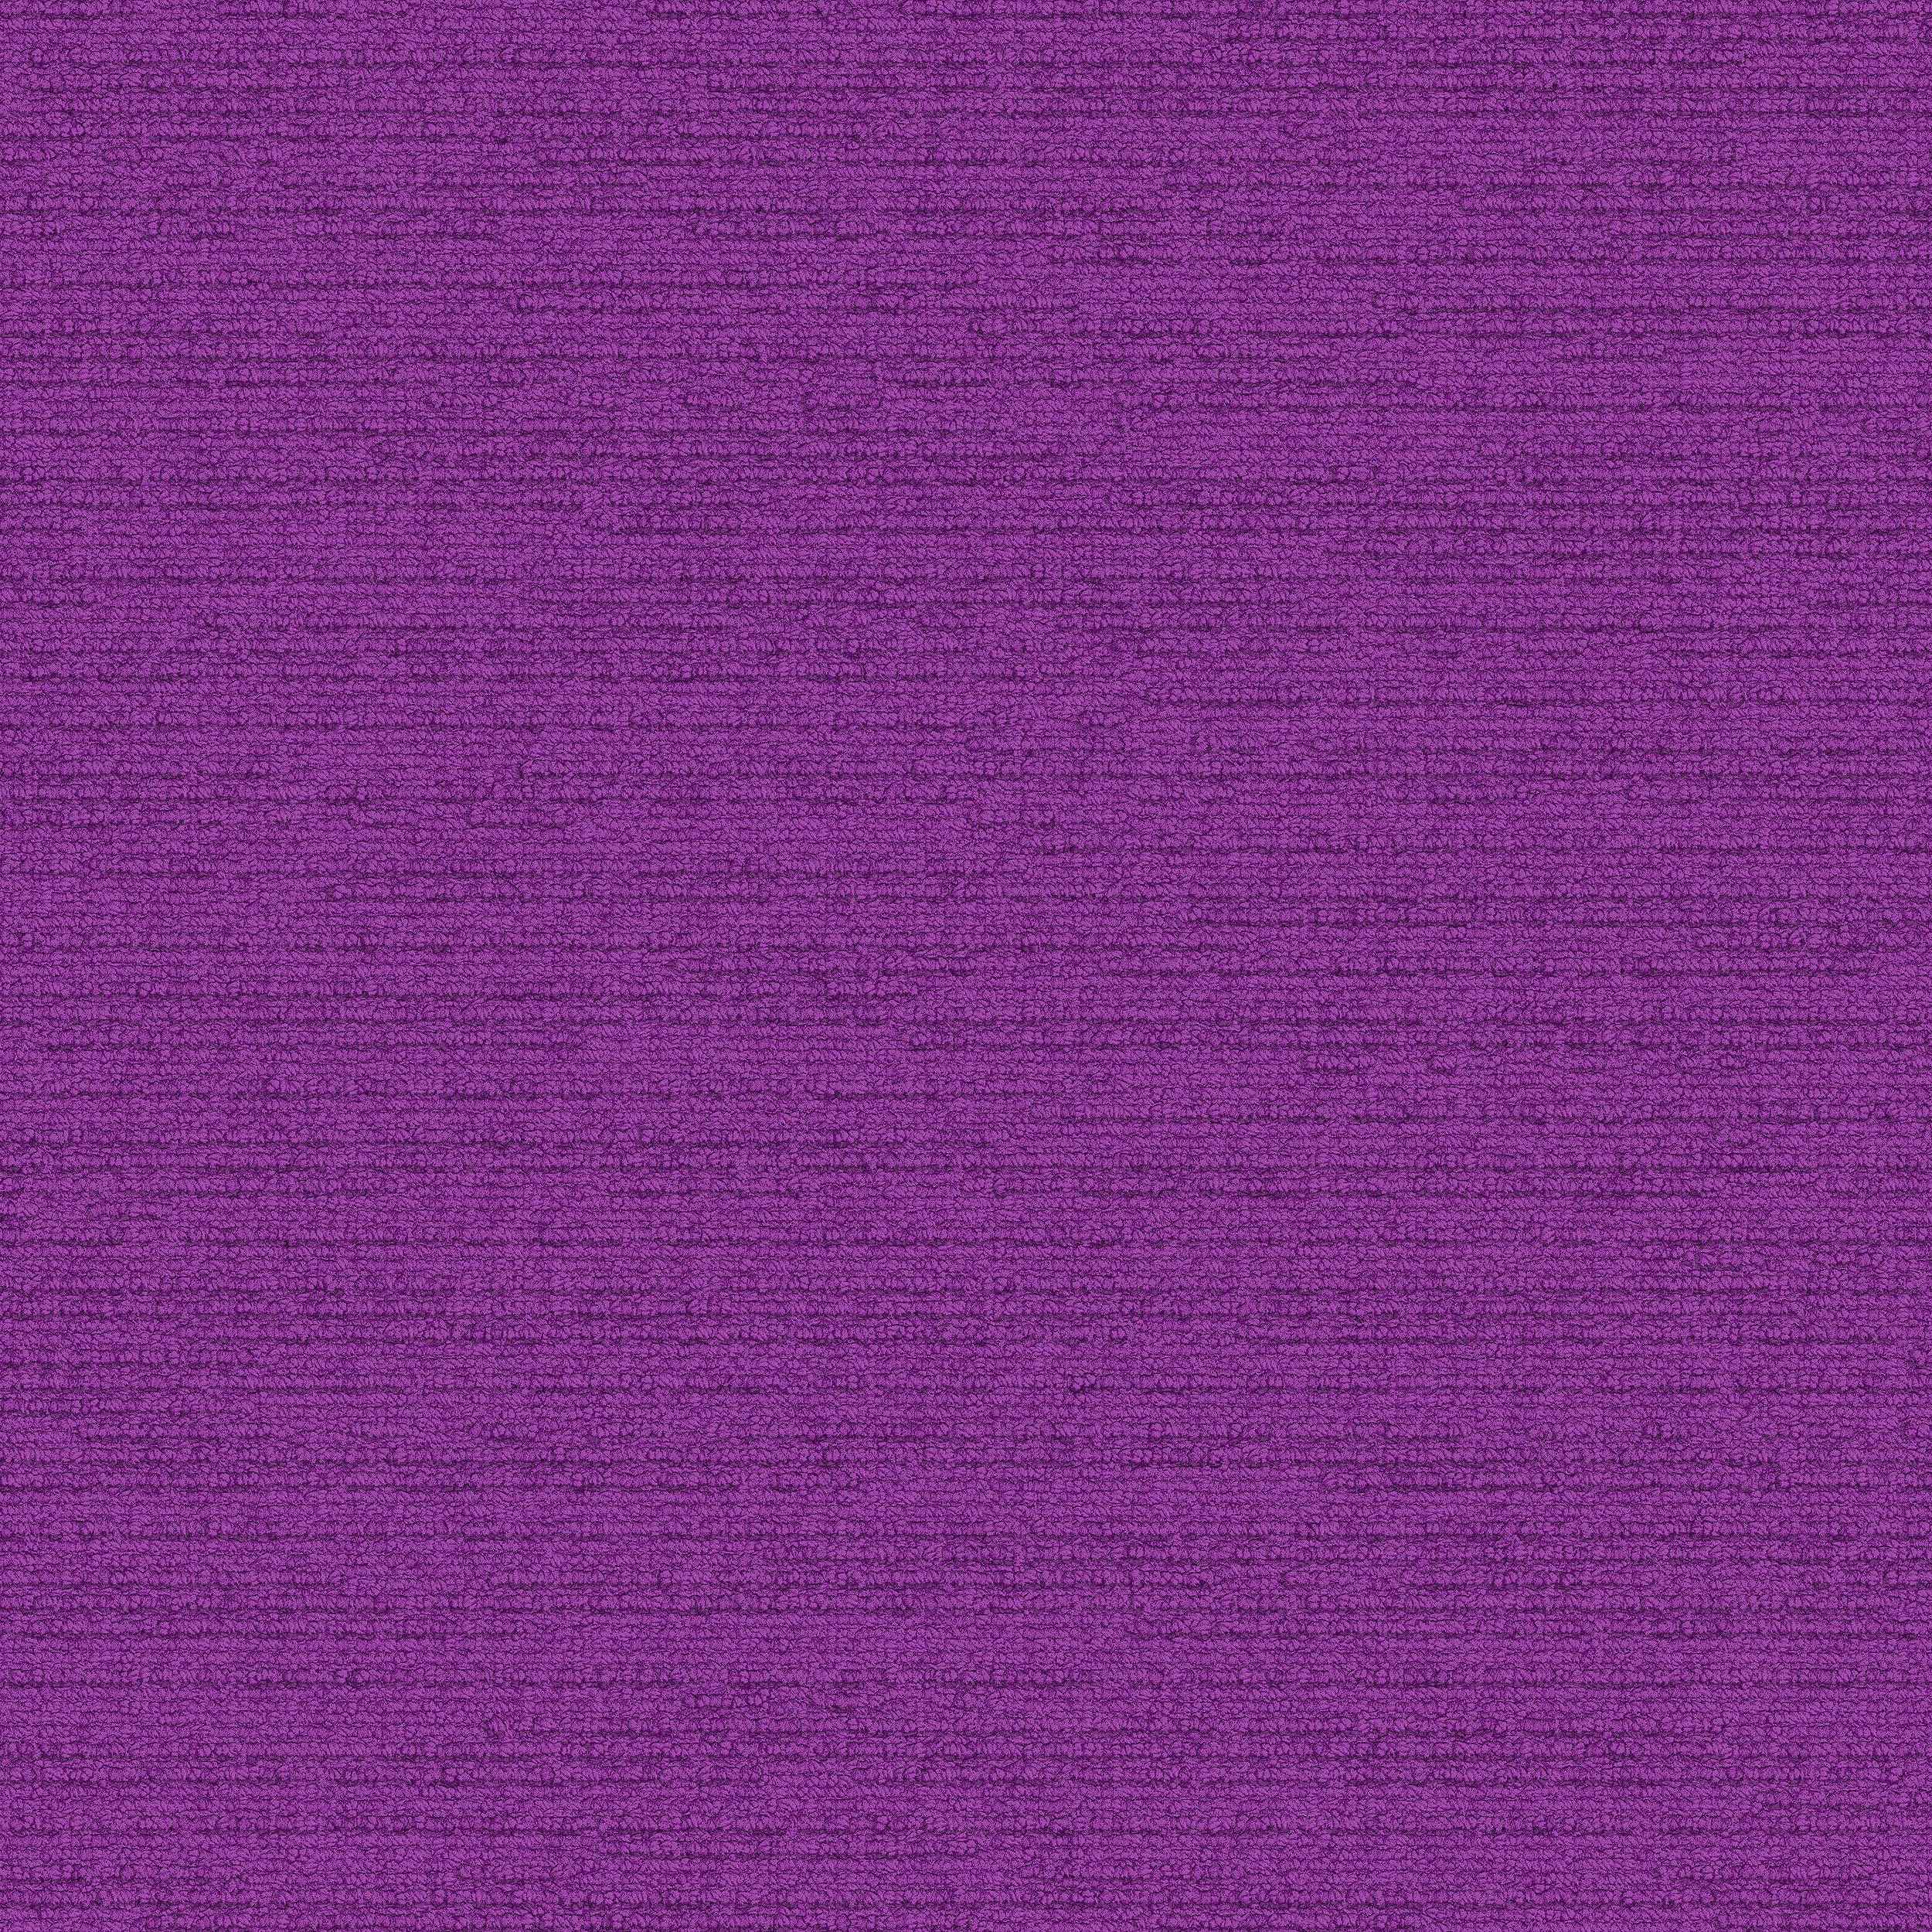 Viva Colores Carpet Tile In Violeta numéro d’image 9